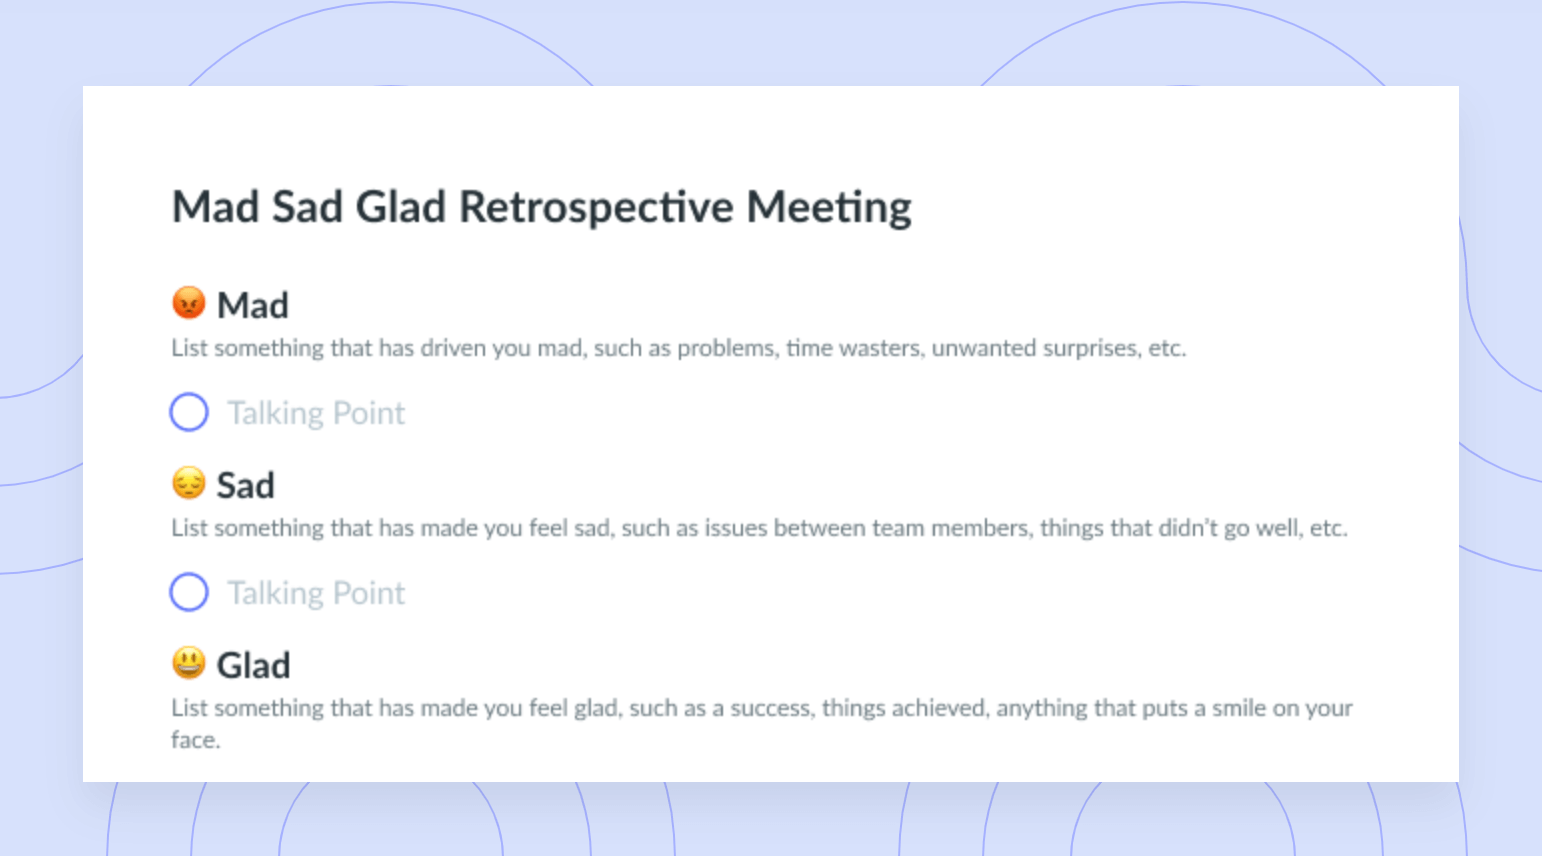 Mad Sad Glad Retrospective Meeting Template